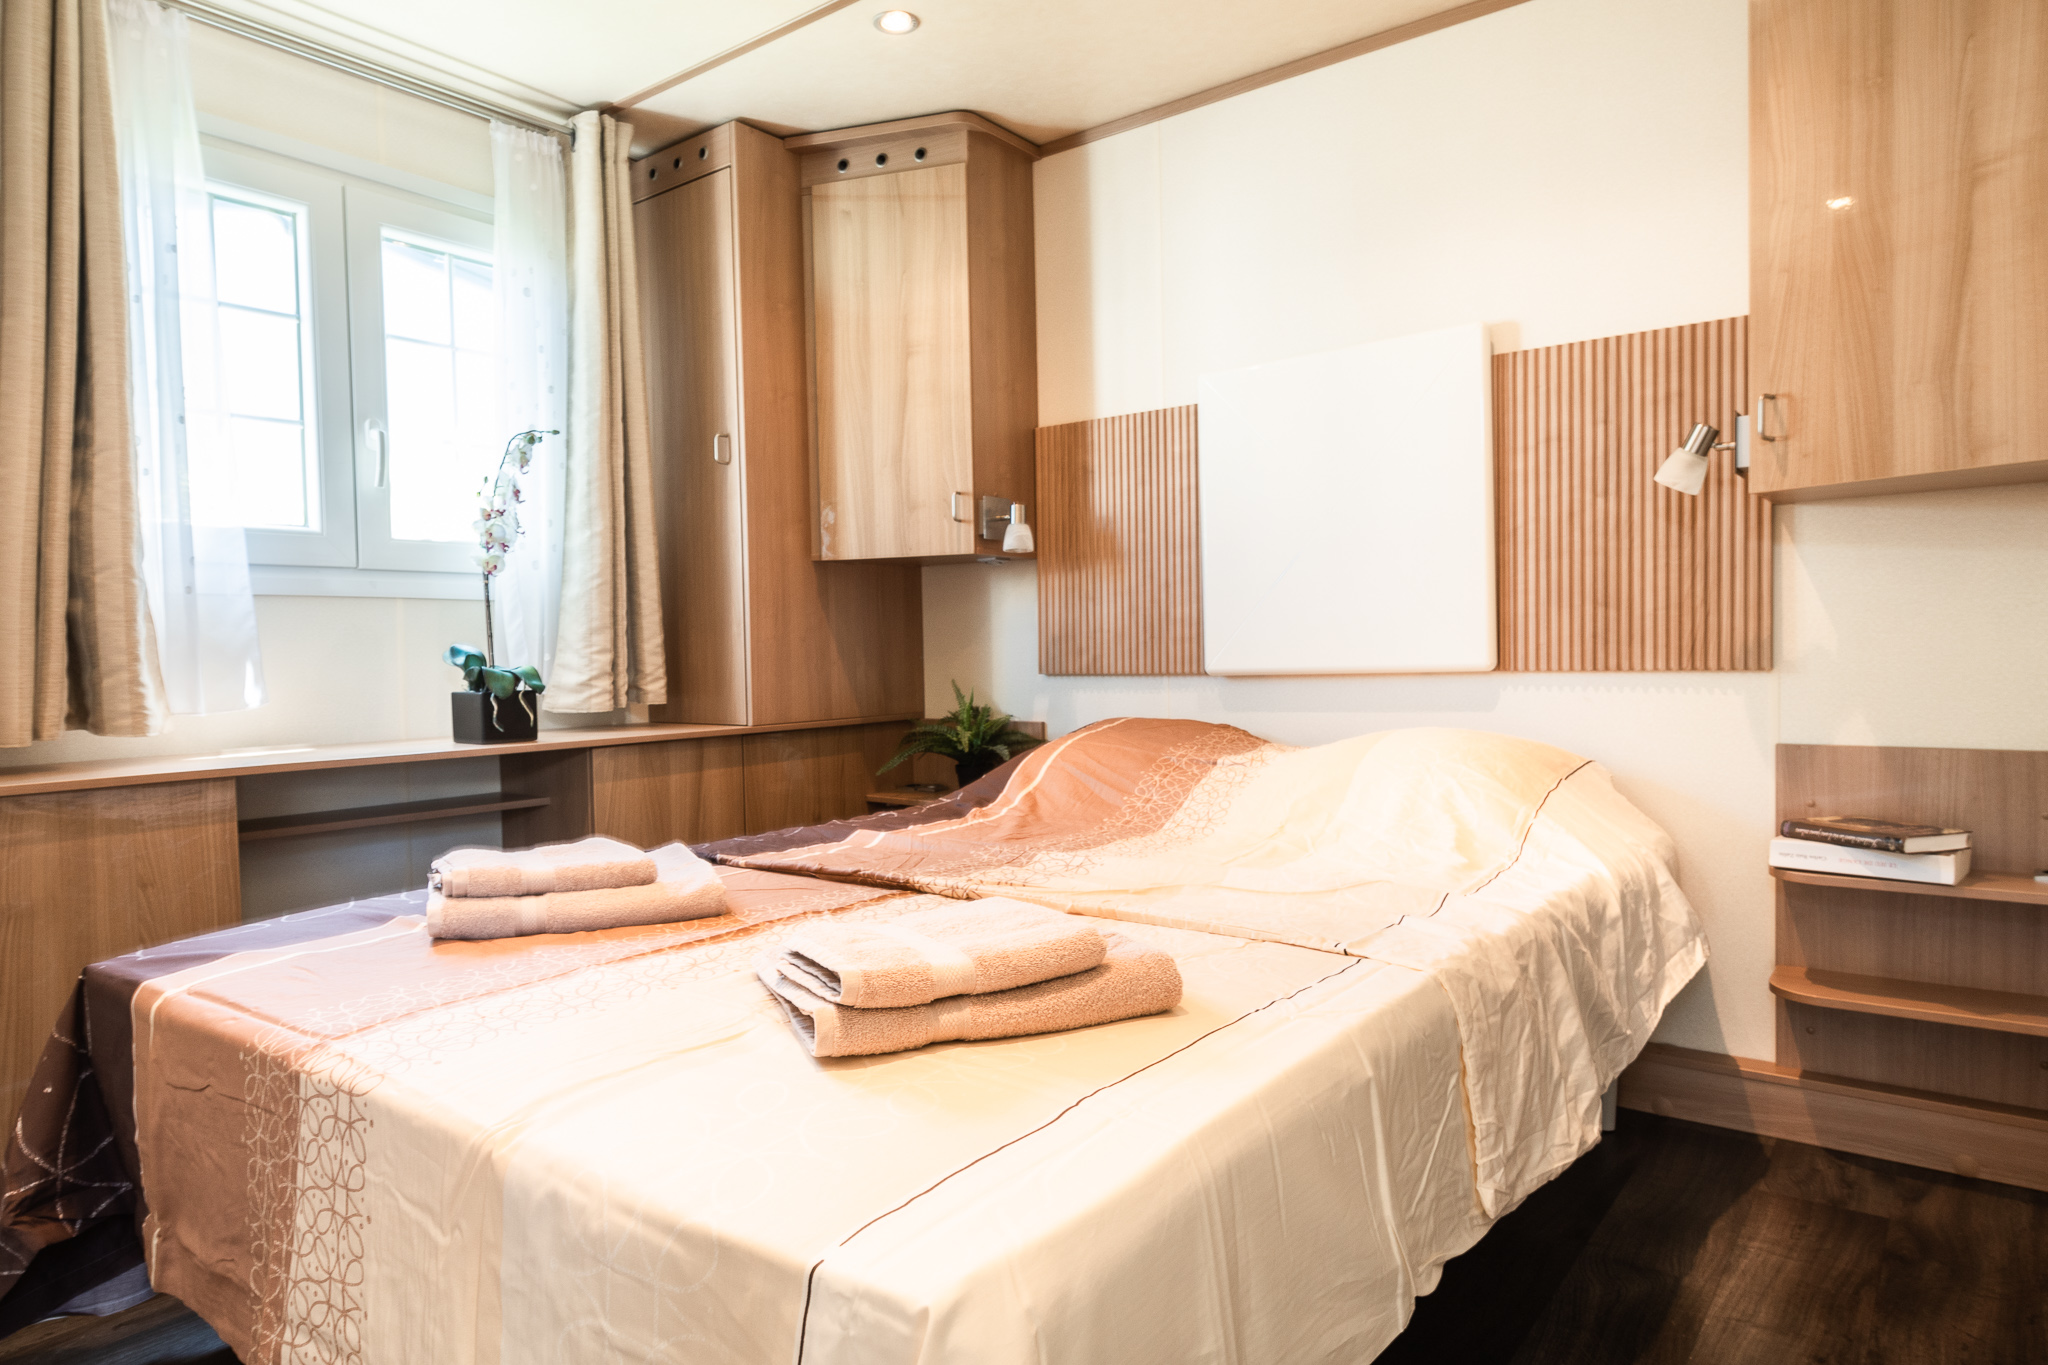 Cottage Premium - 40 m² - 2 bedrooms